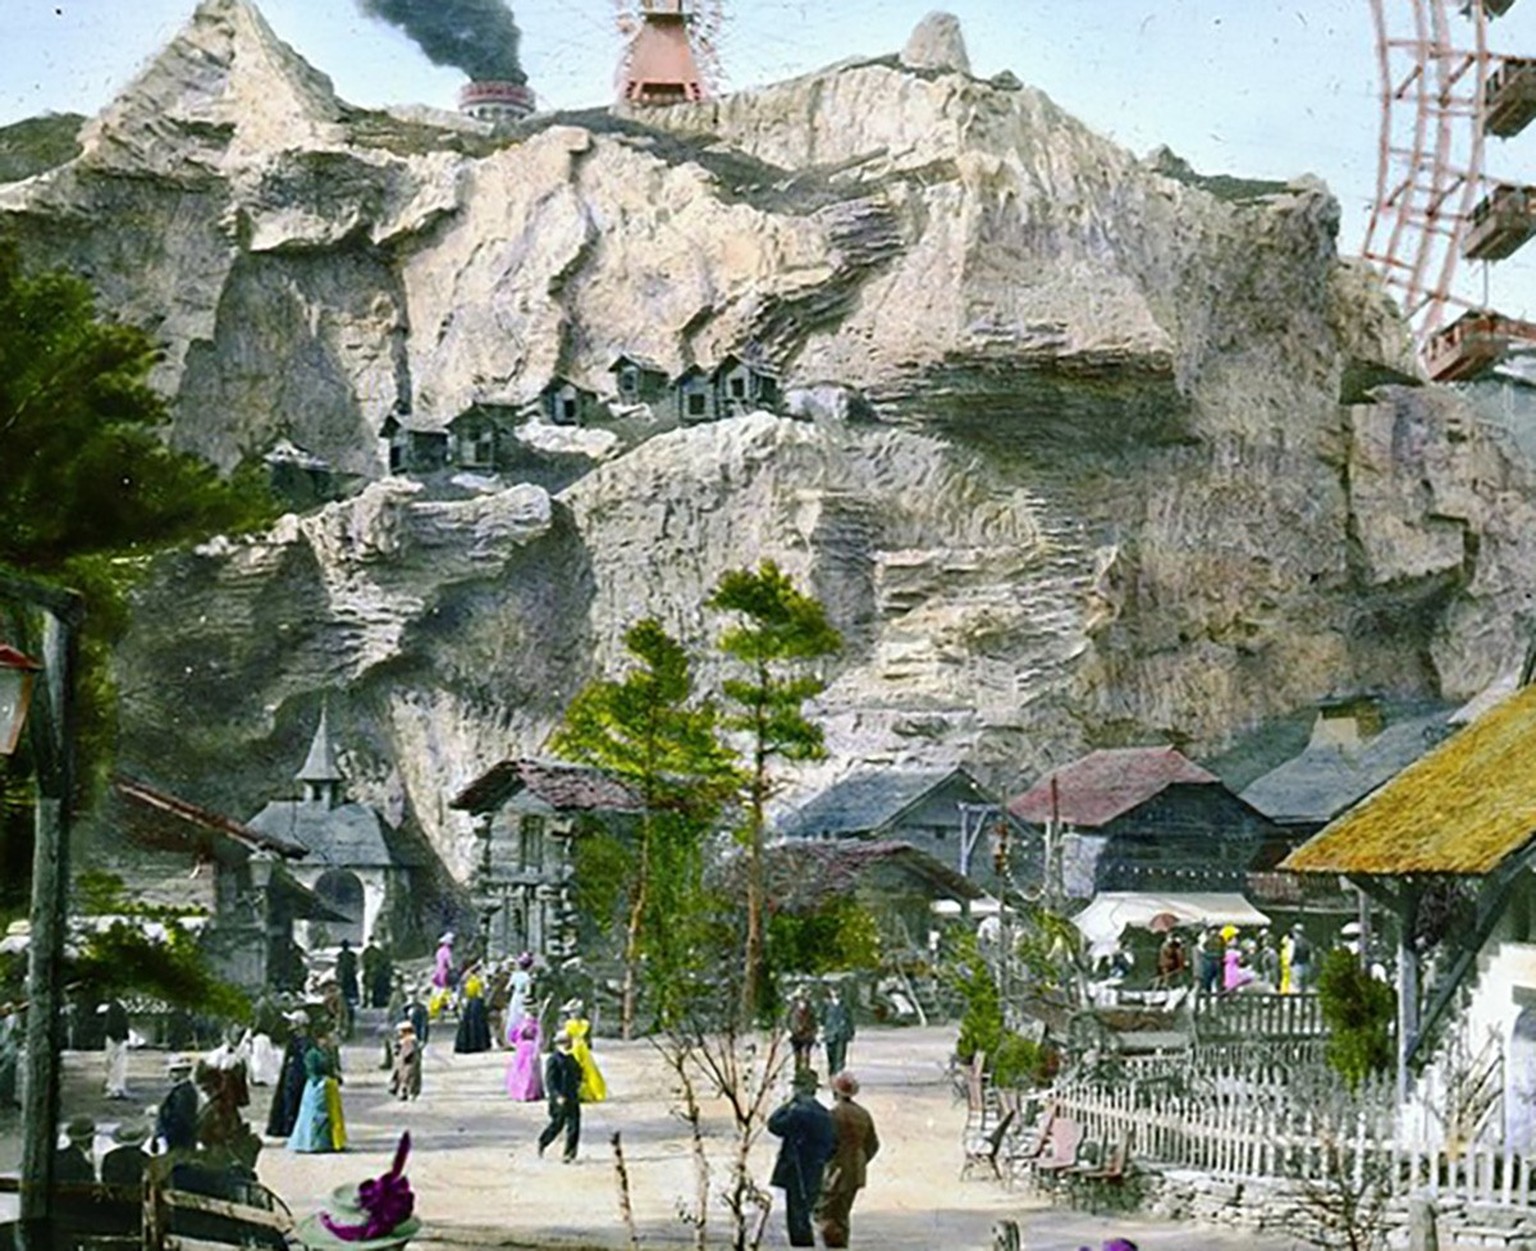 Das Schweizerdorf auf der Pariser Weltausstellung 1900, unbekannter Fotograf.
https://www.brooklynmuseum.org/opencollection/archives/image/53580